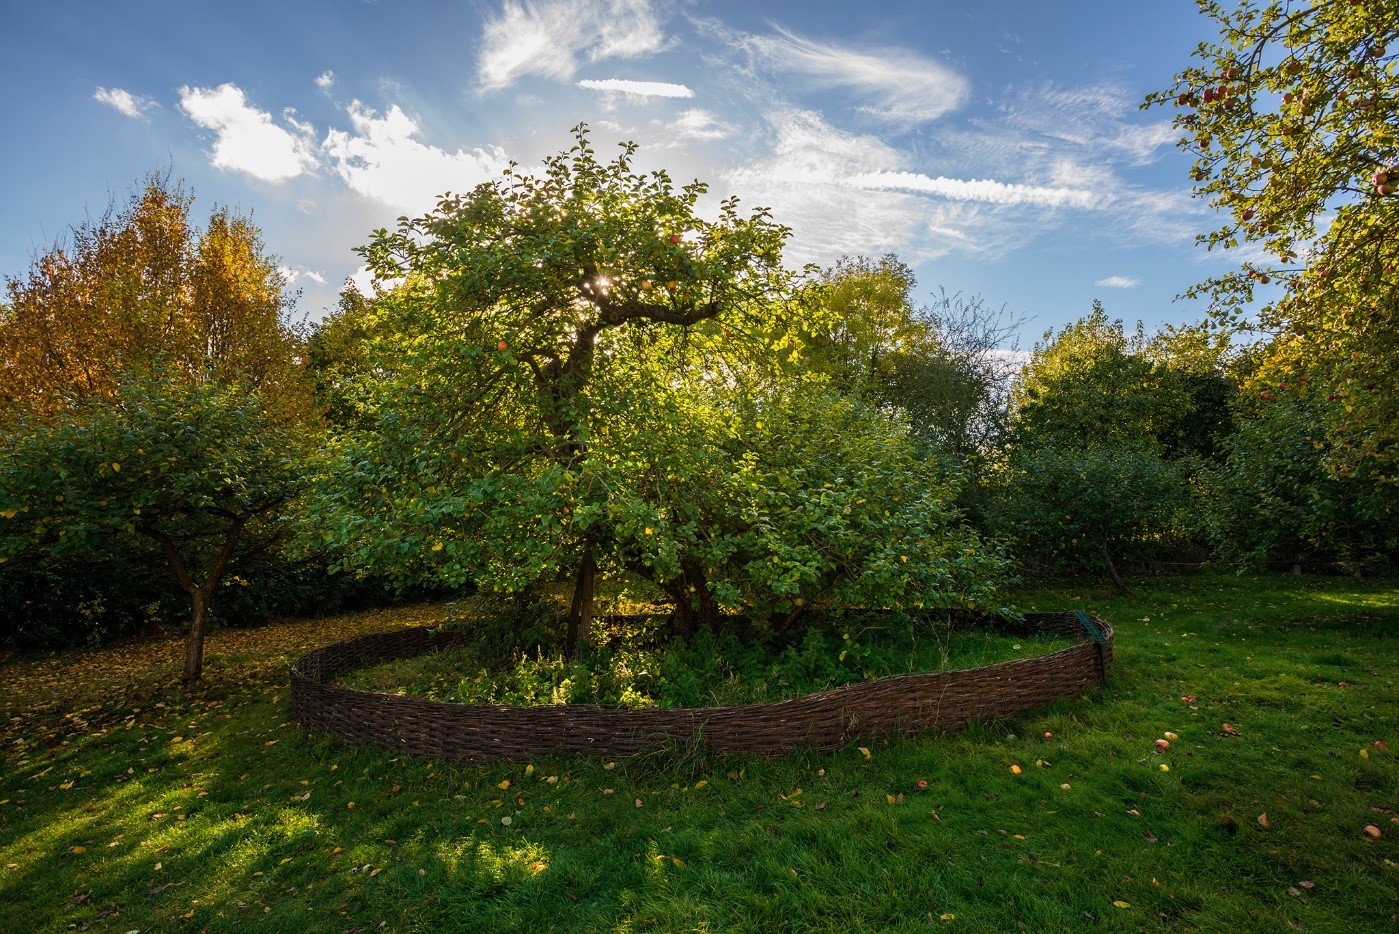 Sör Isaac Newton’un Linconshire, İngiltere’deki elma ağacının bu fotoğrafı için, yılın doğru zamanında orada olmak en önemlisiydi – elmaların en kırmızı olduğu zaman ve ağaçtan düşmelerinden önce.